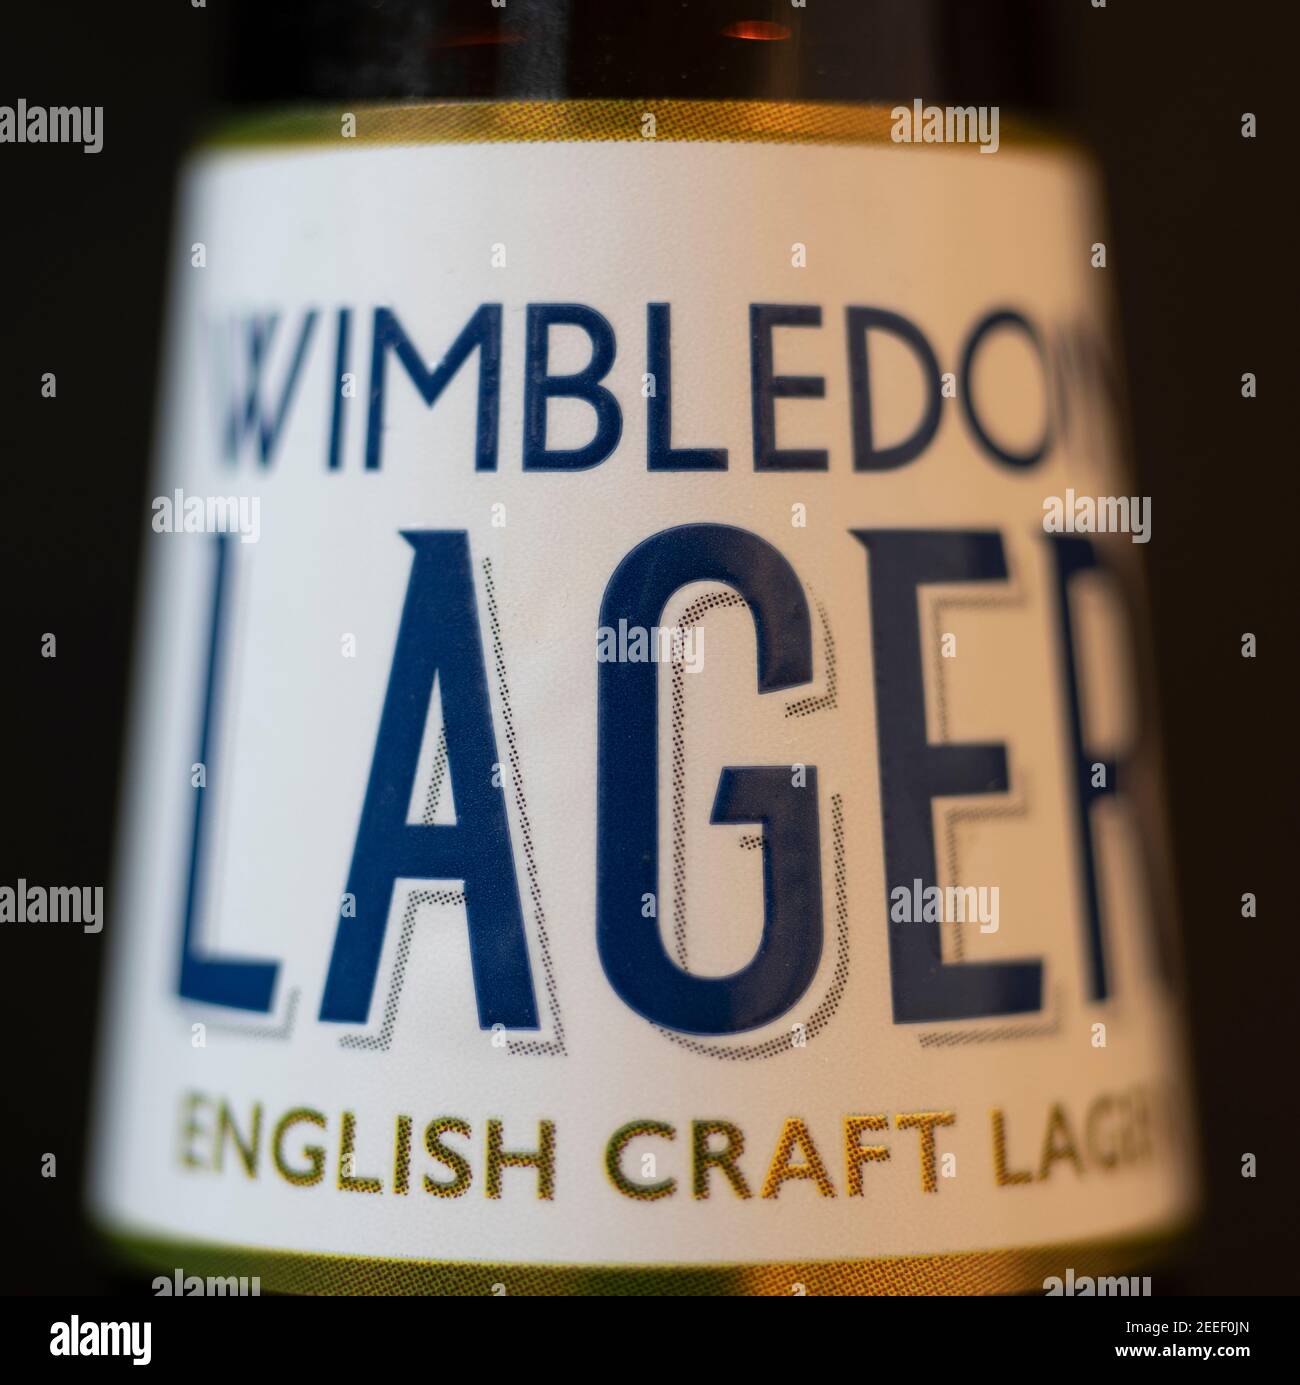 Wimbledon French Craft Lager bière bouteille étiquette de col fermé Banque D'Images